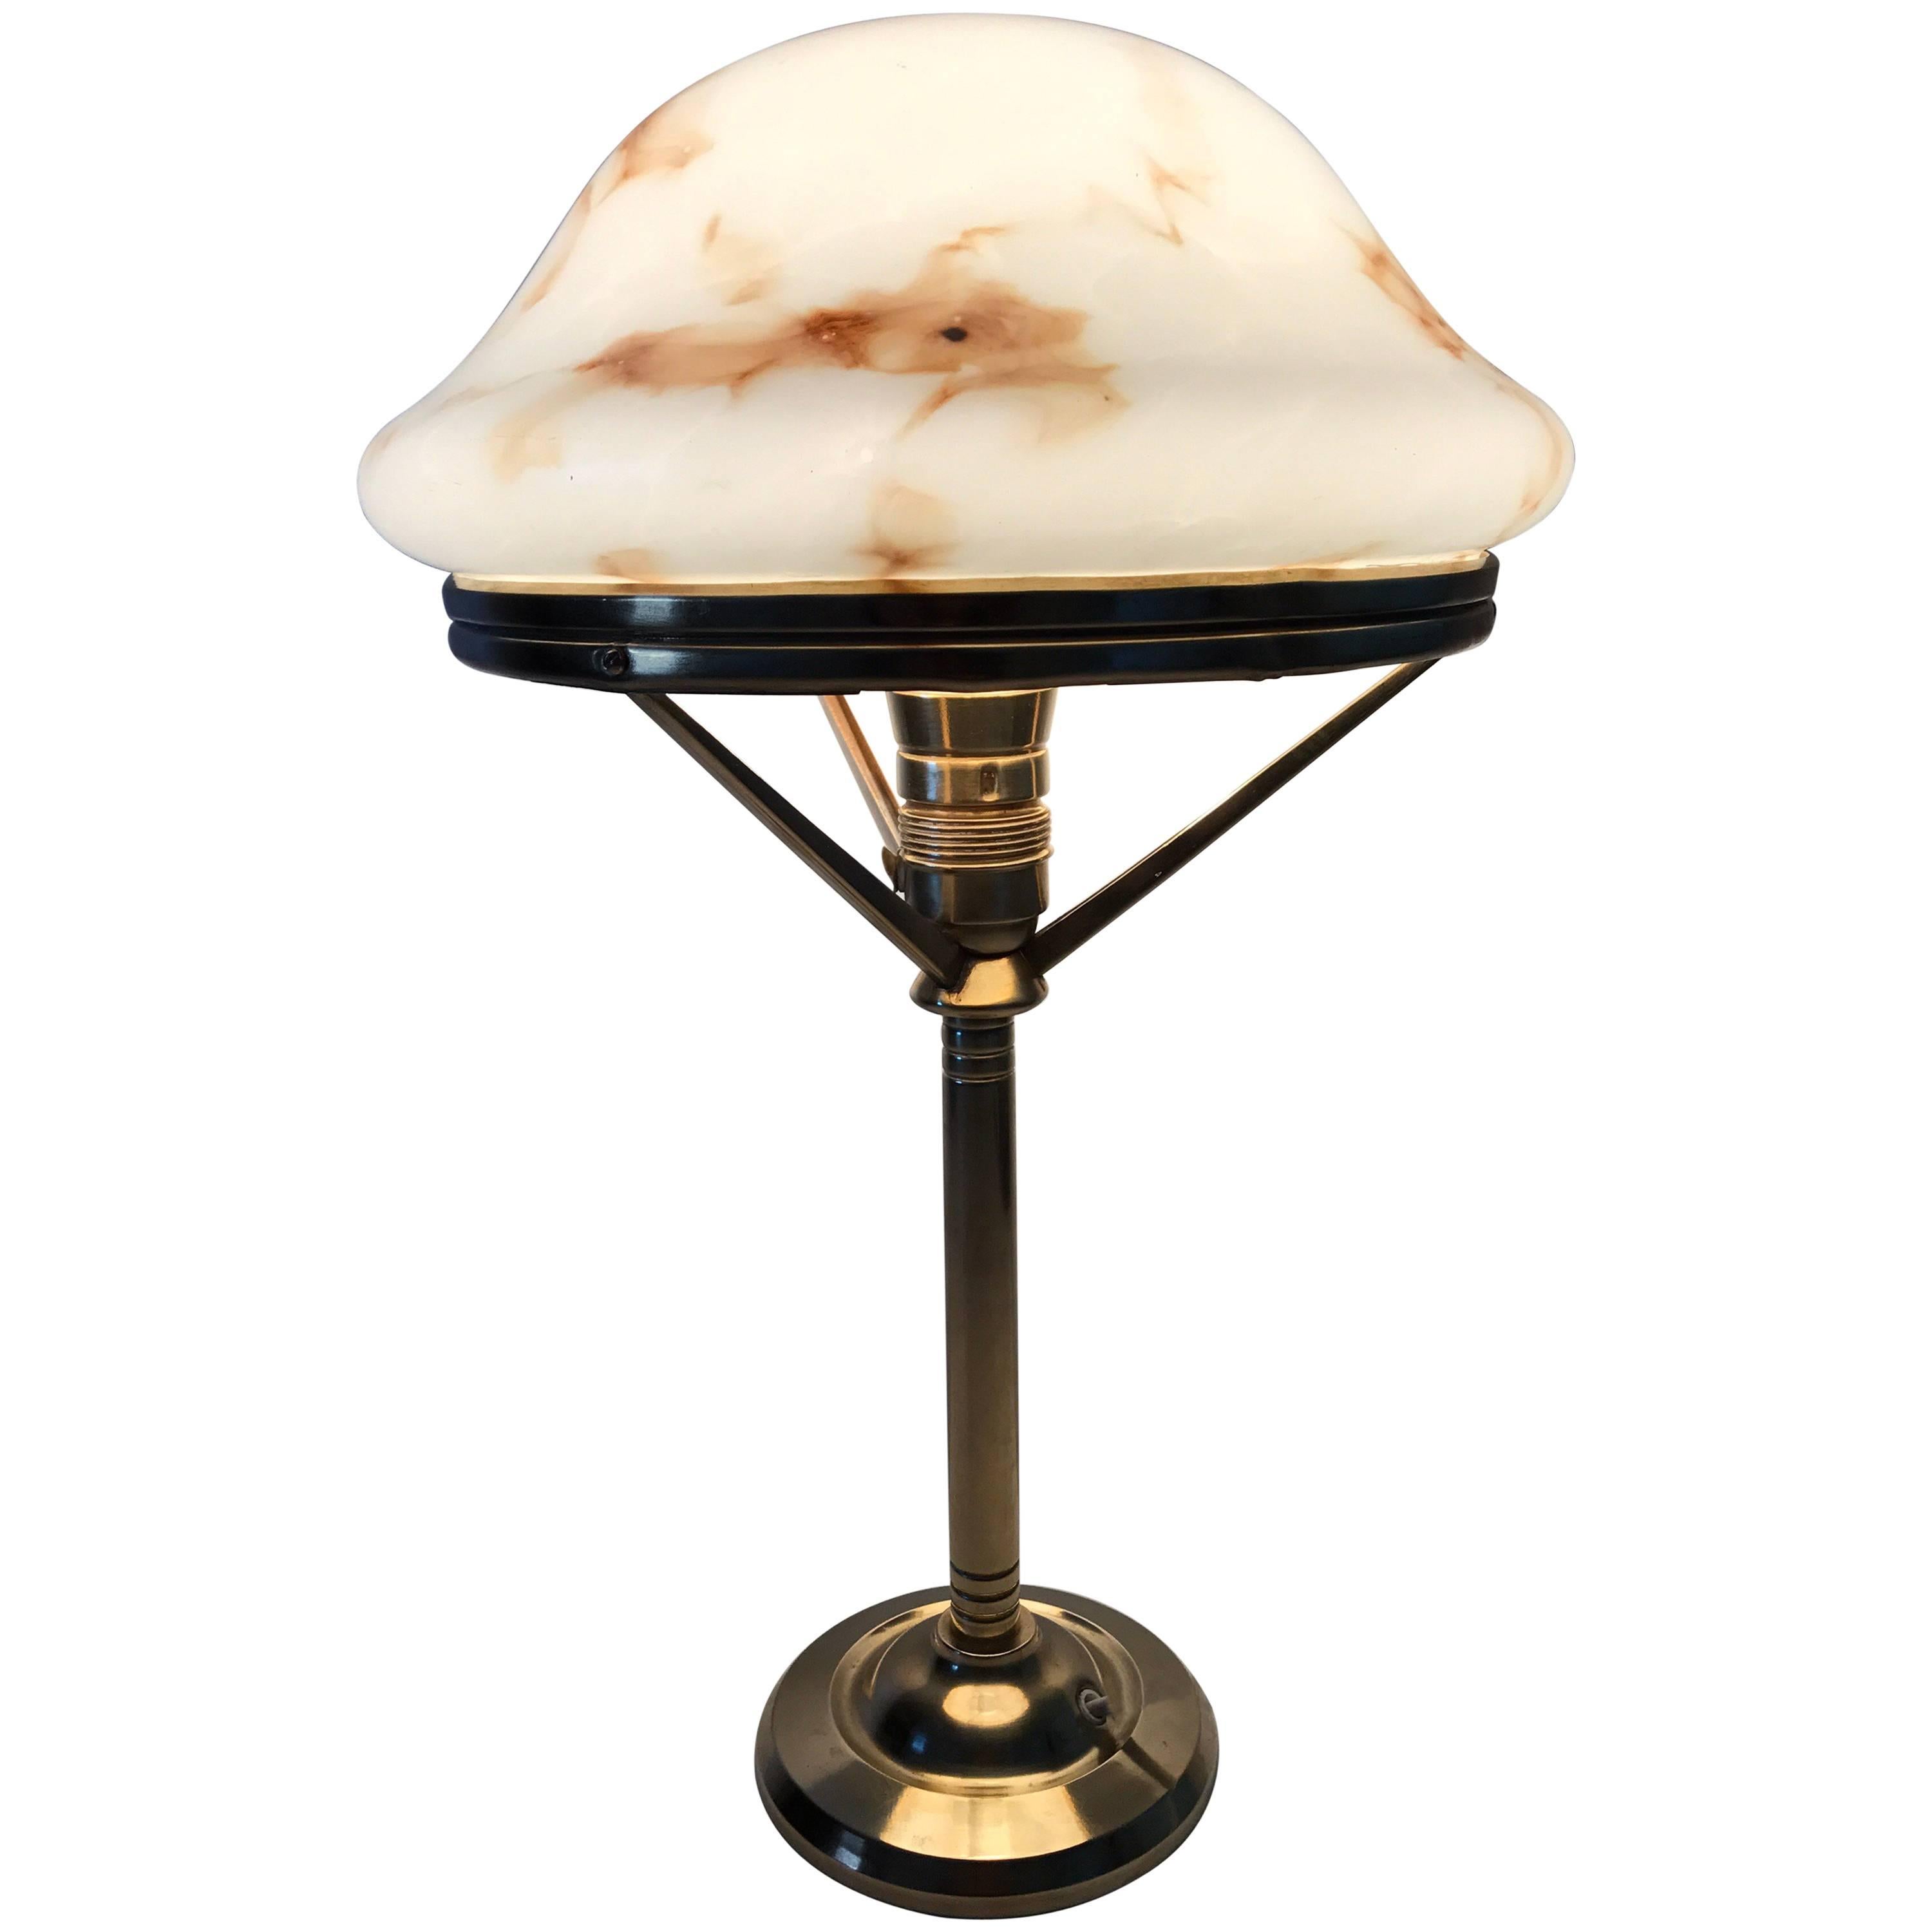 1920 Swedish Art Nouveau Jugendstil Brass and Art Glass Table Lamp For Sale